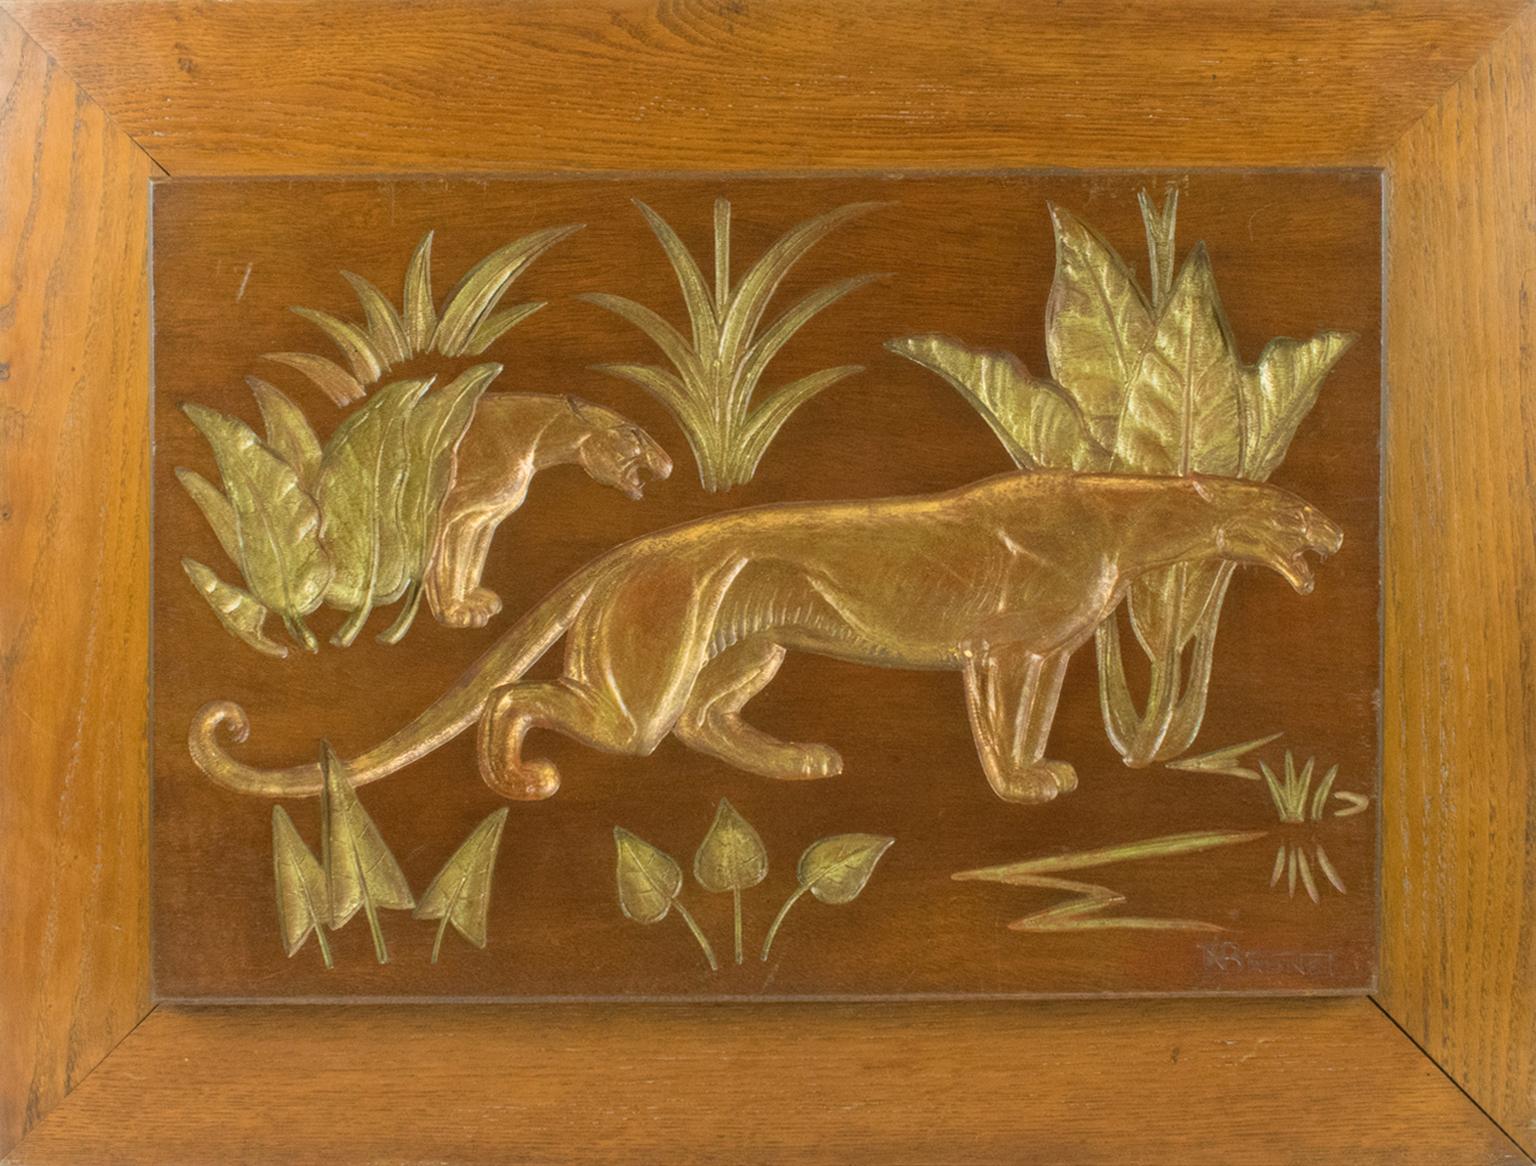 Diese prächtige gravierte Holztafel, die Panther im Busch darstellt, wurde von N.R. geschaffen. Brunet (Frankreich, 20. Jahrhundert). Zeittypisches Art-Déco-Design, N.R. Brunet ist bekannt für seine Bronzeskulpturen, die Raubkatzen darstellen. Die